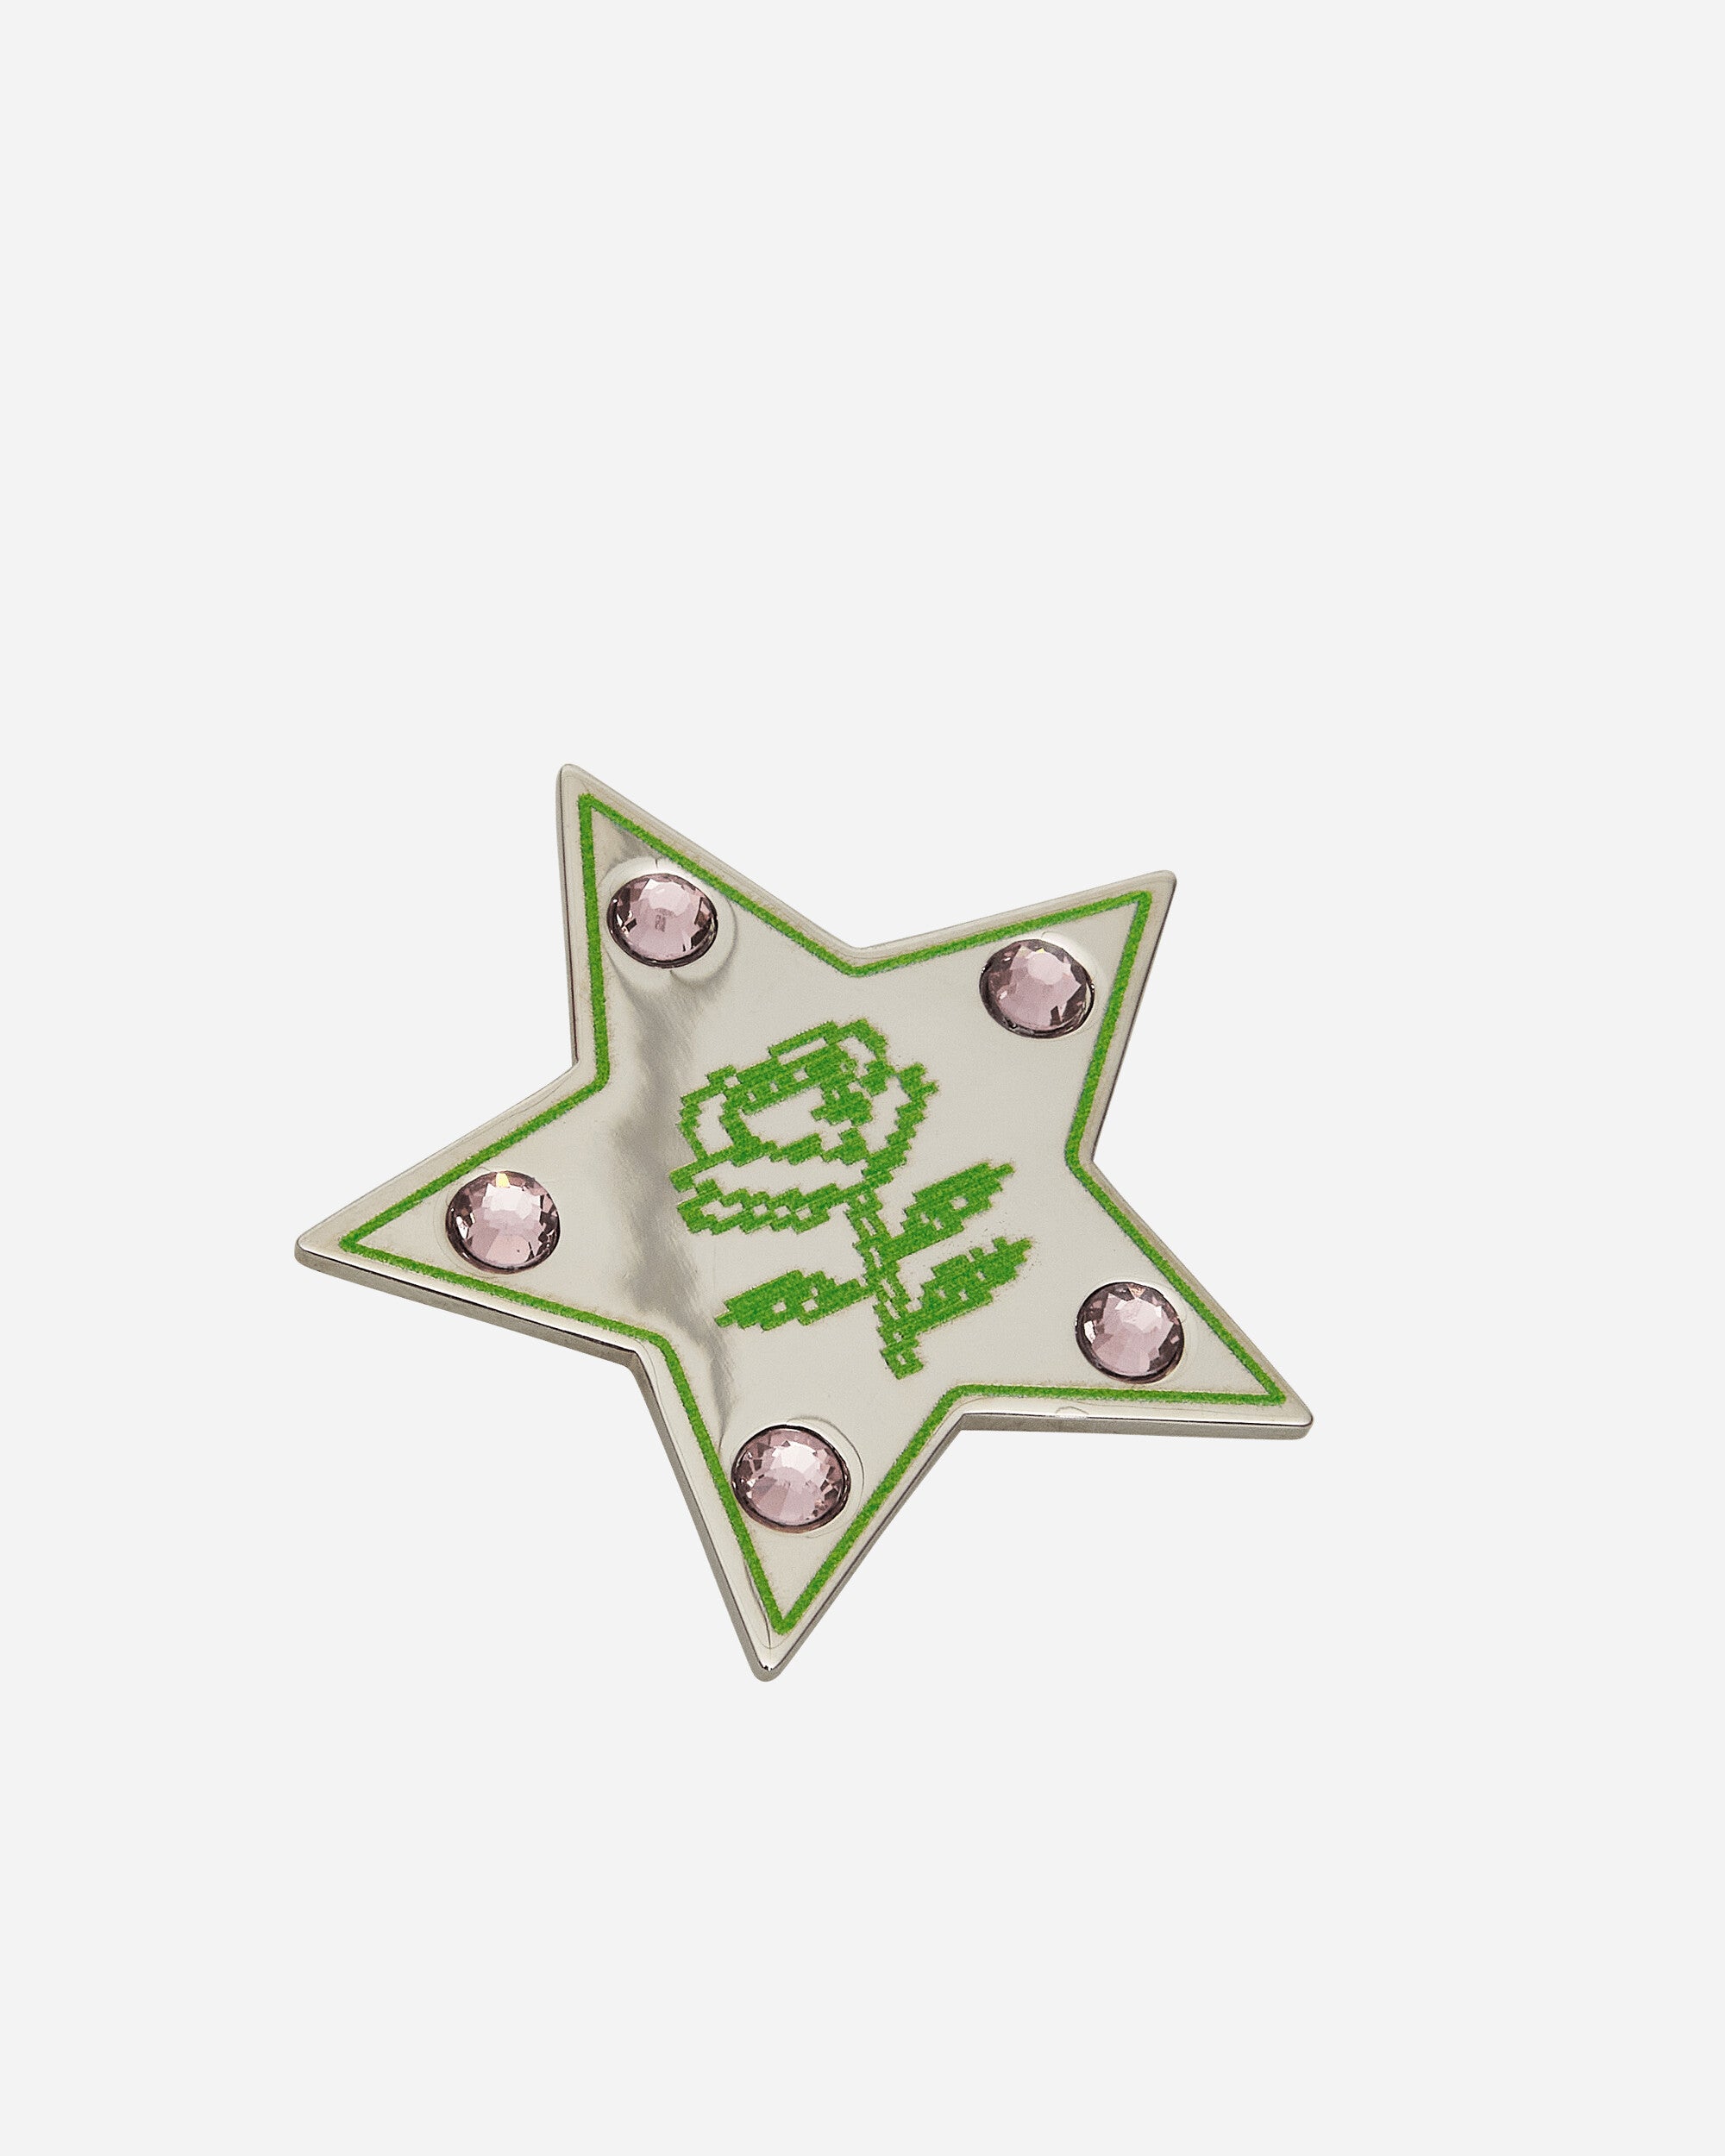 Safsafu Wmns Super Star Earrings Silver/Green Jewellery Earrings U1-24-E6 SG